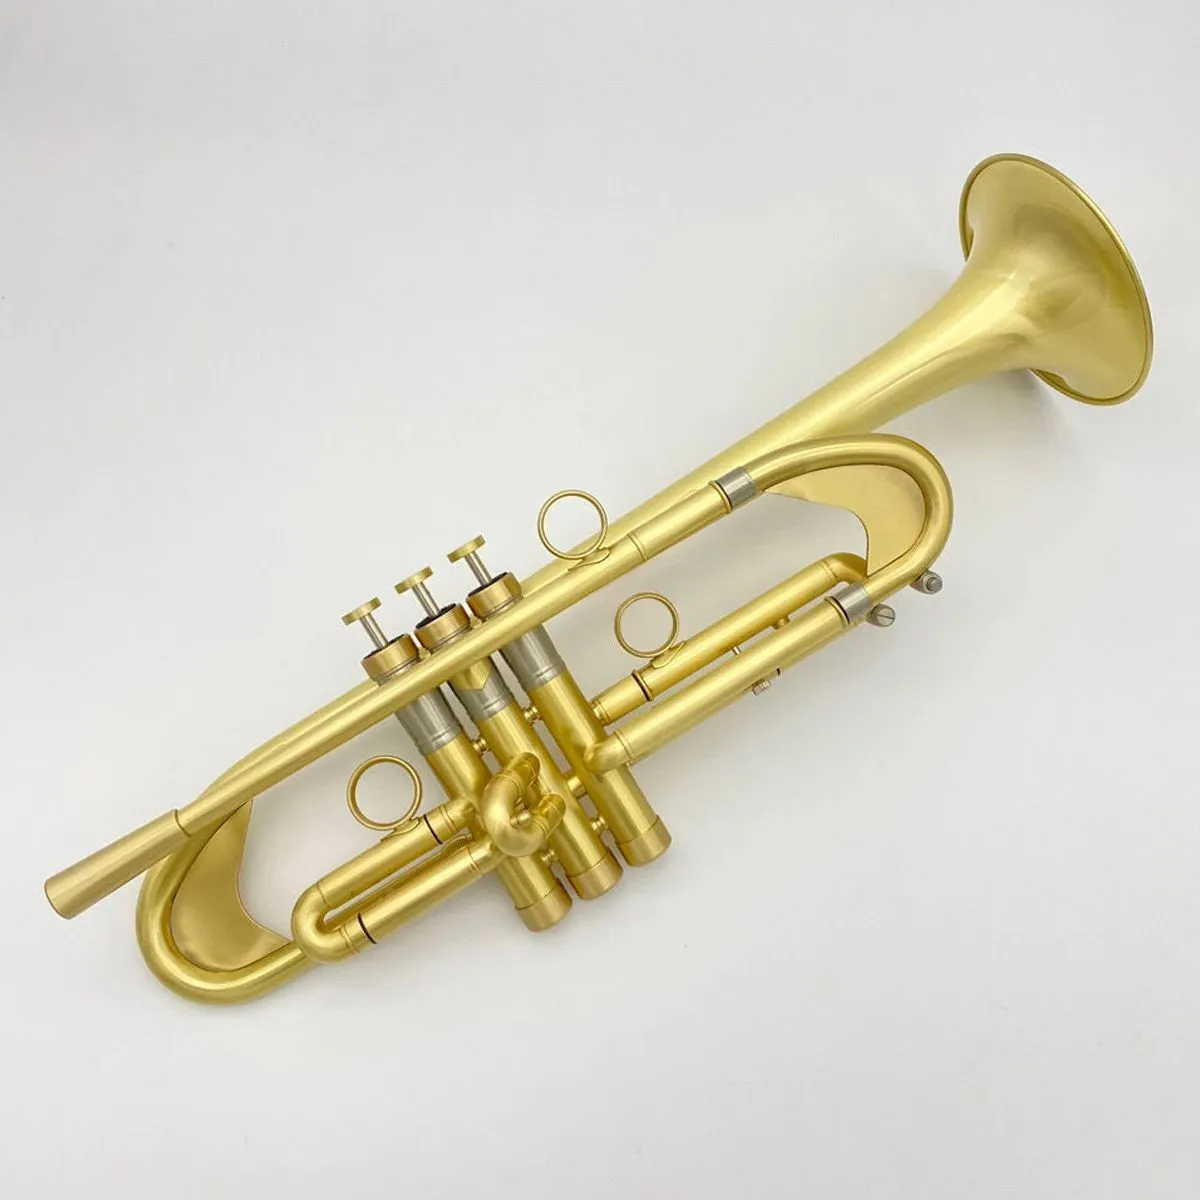 Nuevo Instrumento musical de trompeta de alta gama, cobre lleno de trompeta profesional aerodinámico cepillado chapado en oro